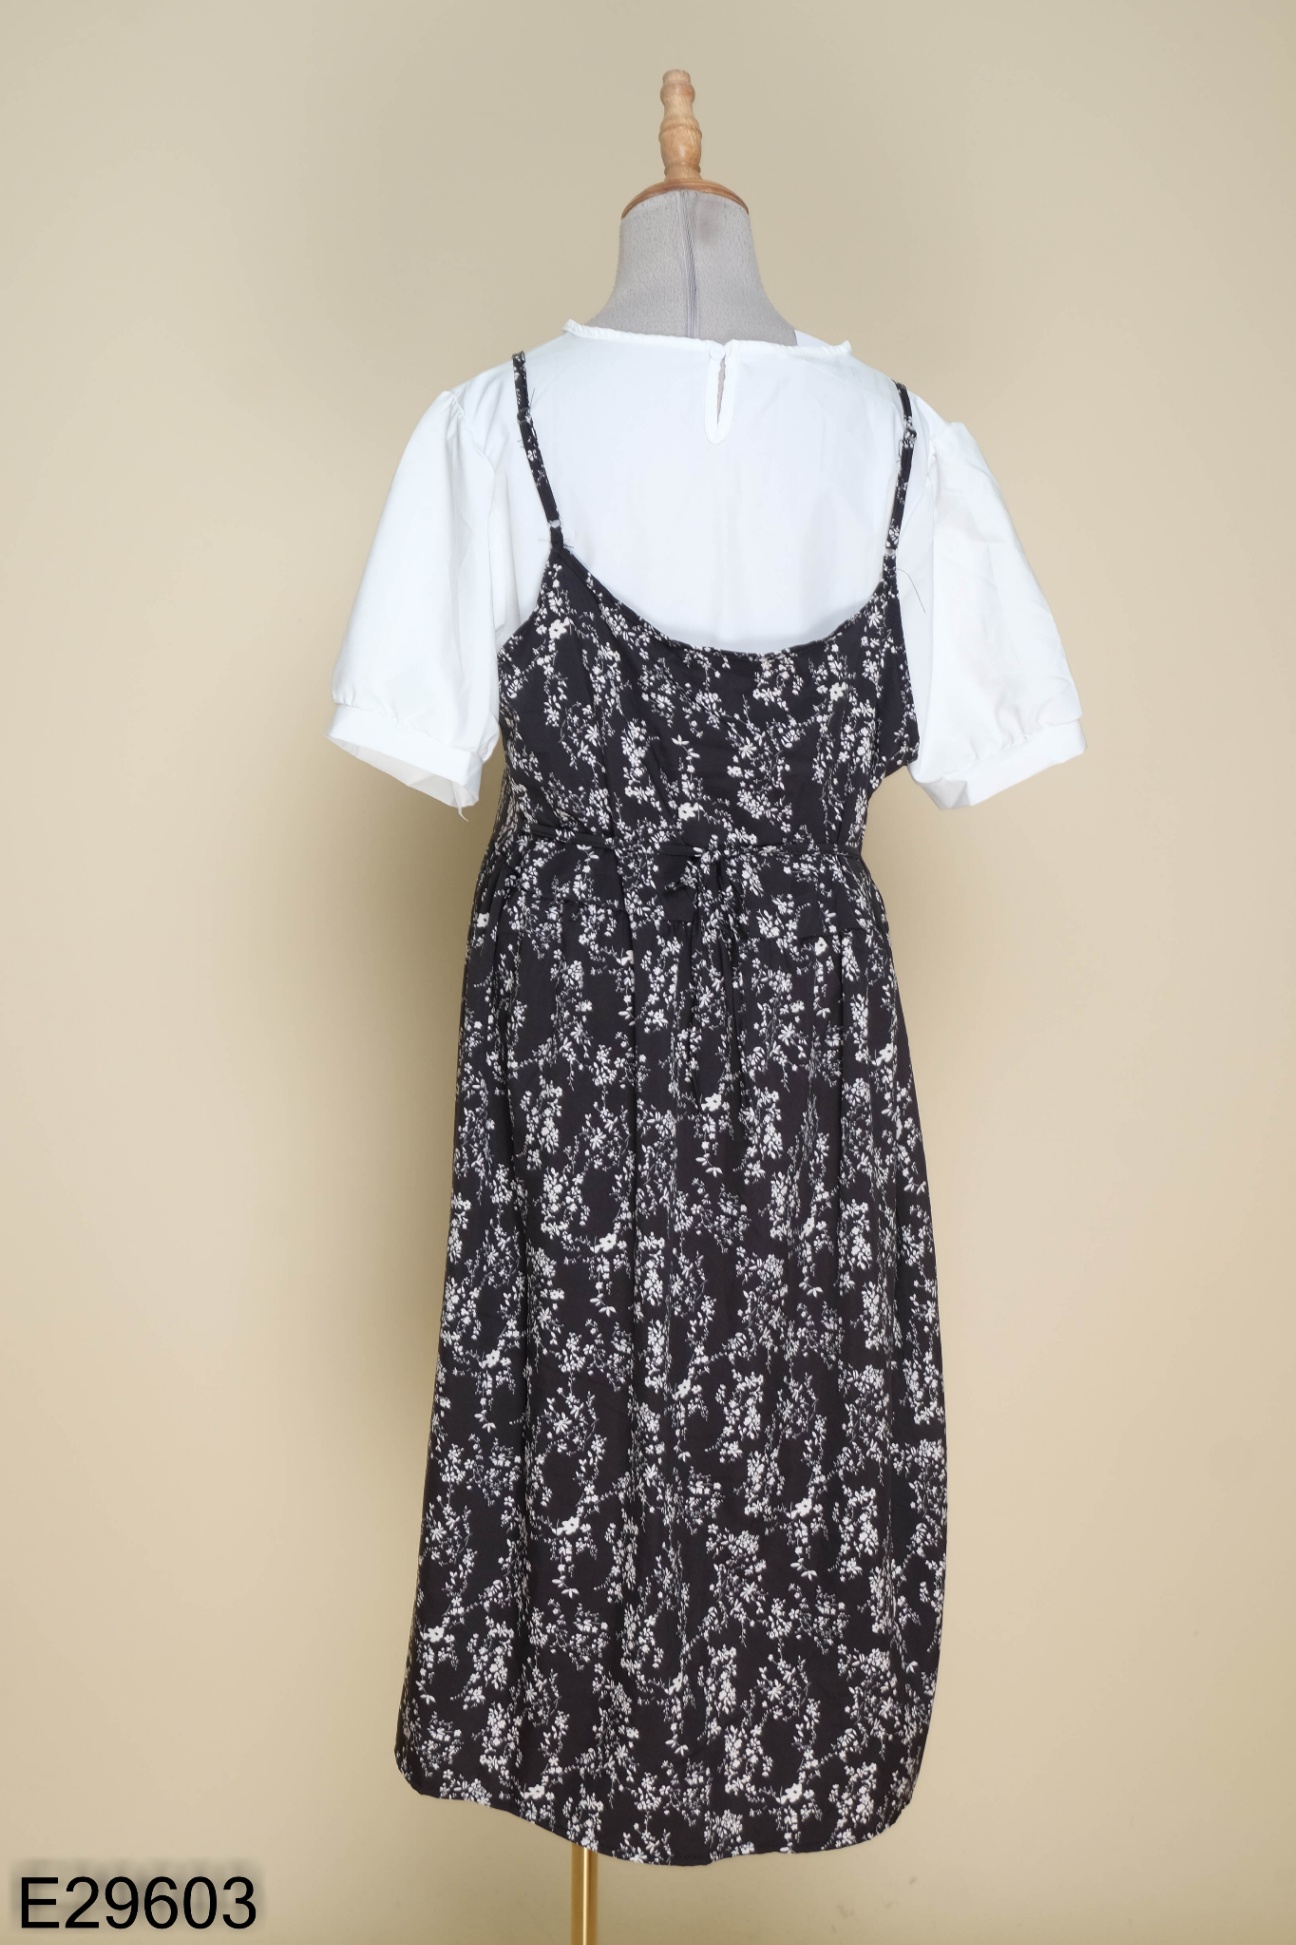 Váy hai dây hoa nhí nâu, trắng - Đầm 2 dây hoa nhí vintage - Đầm dáng xòe |  ePrice.vn